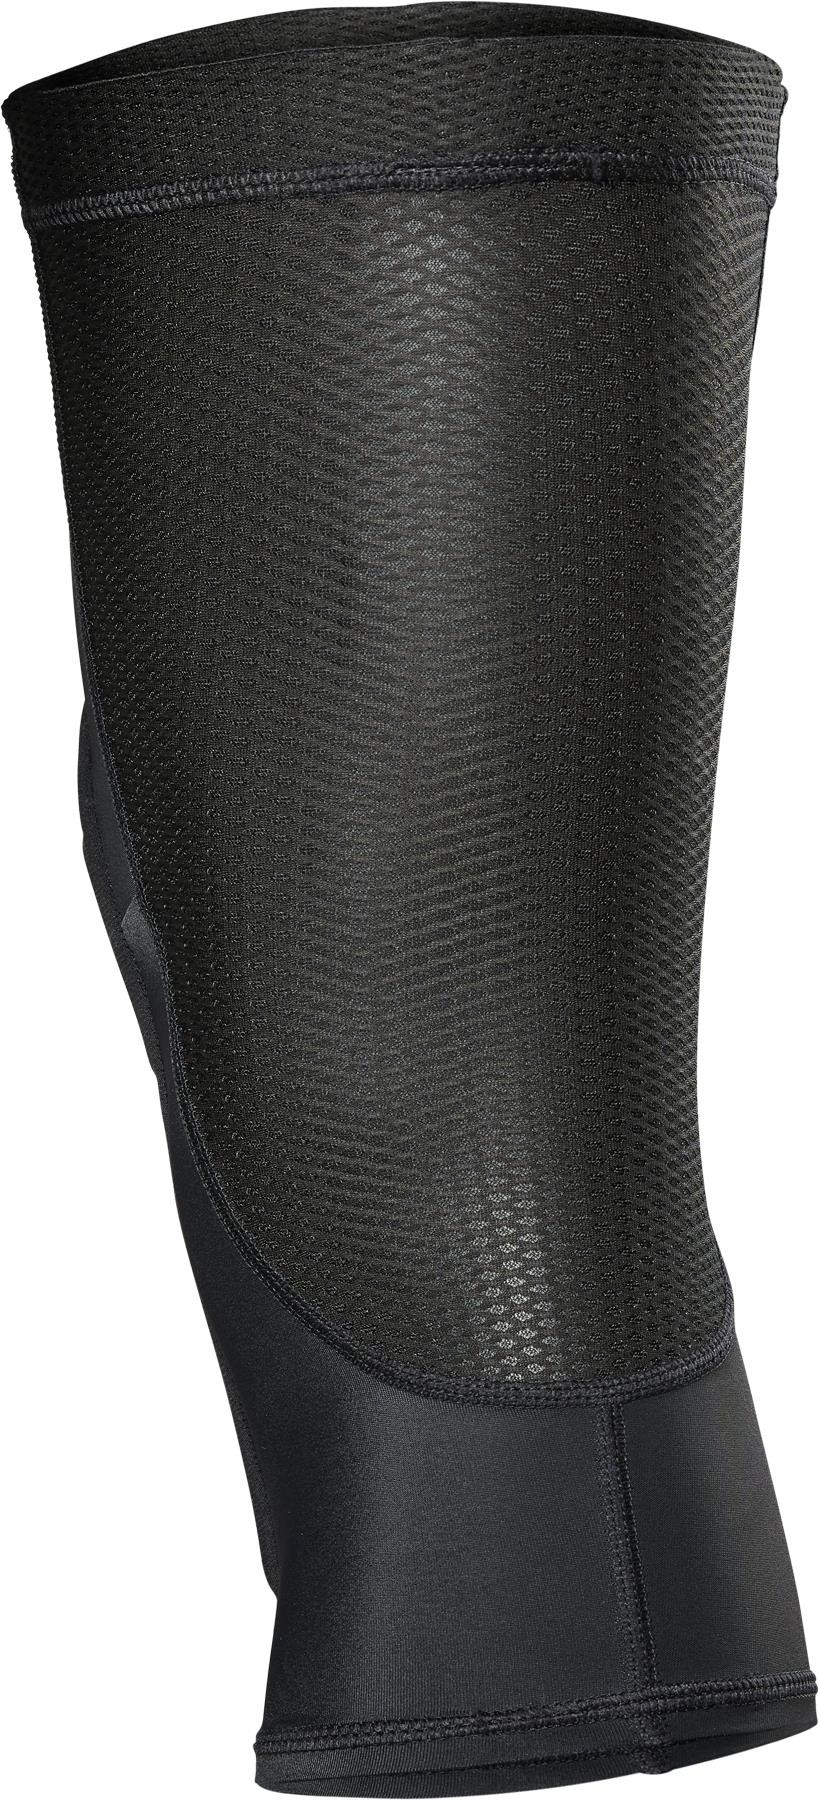 Enduro MTB Knee Sleeves image 1